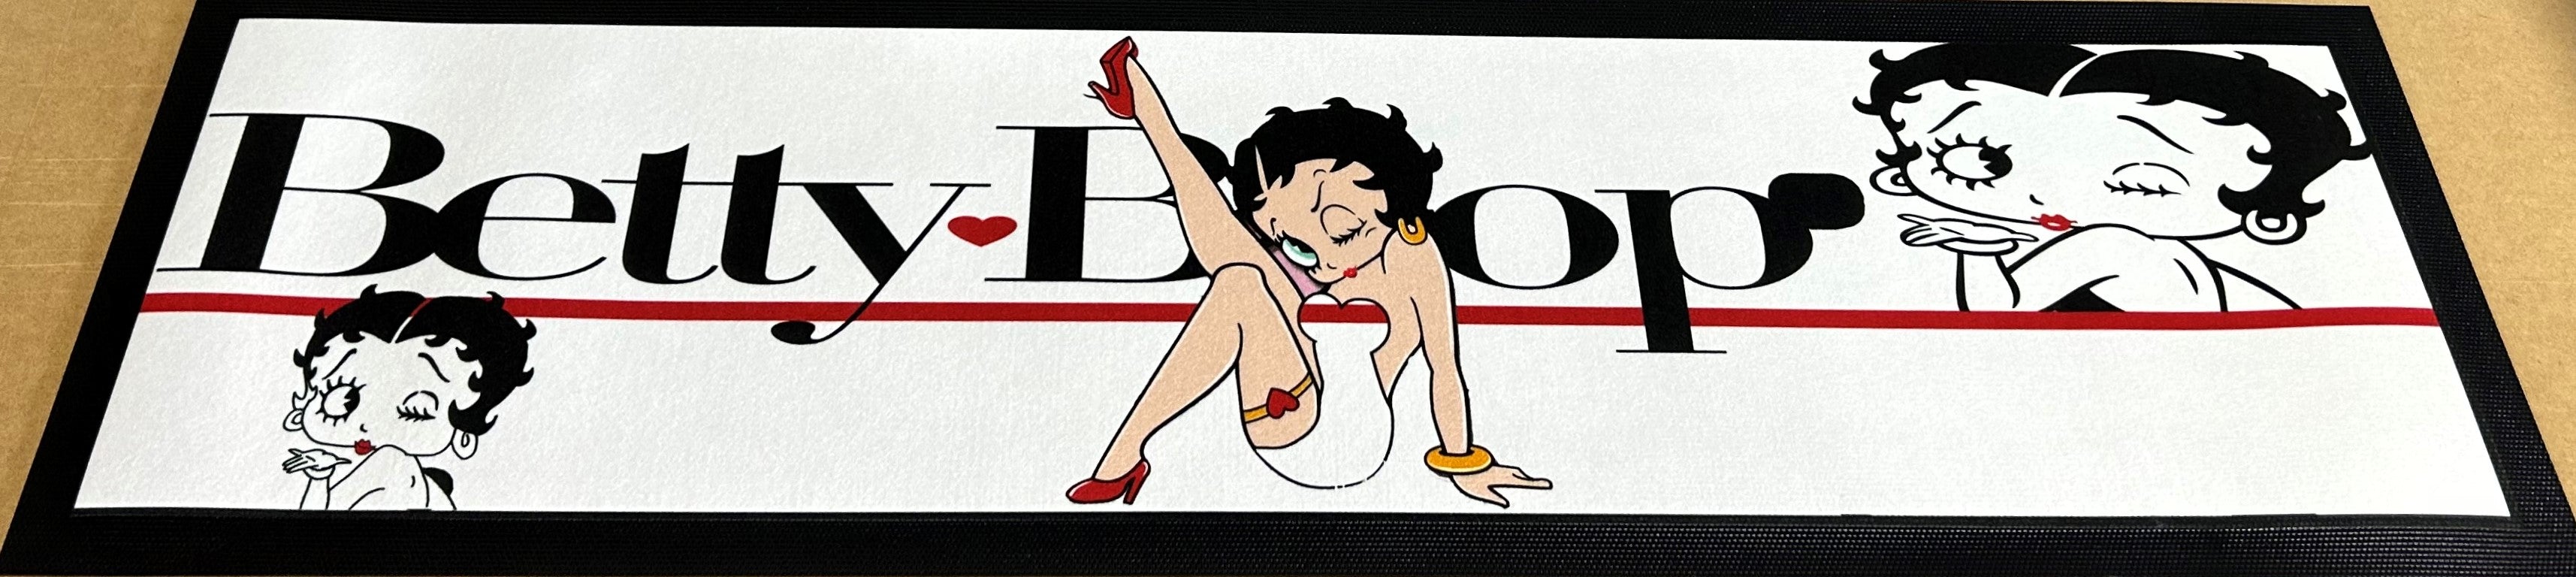 Betty Boop Premium Rubber-Backed Bar Mat Runner - KING CAVE